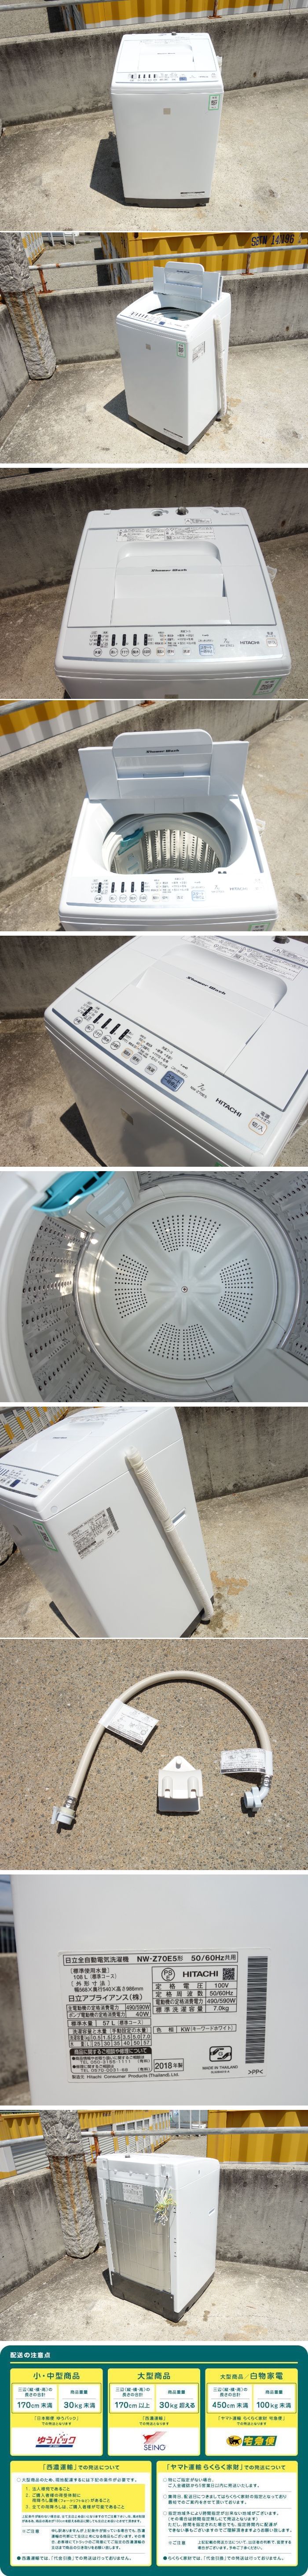 超歓迎格安O▲日立 洗濯機 2018年 7.0kg 送風乾燥 白い約束 シャワー浸透洗浄 ステンレス槽 NW-Z70E5 (25575) 5kg以上